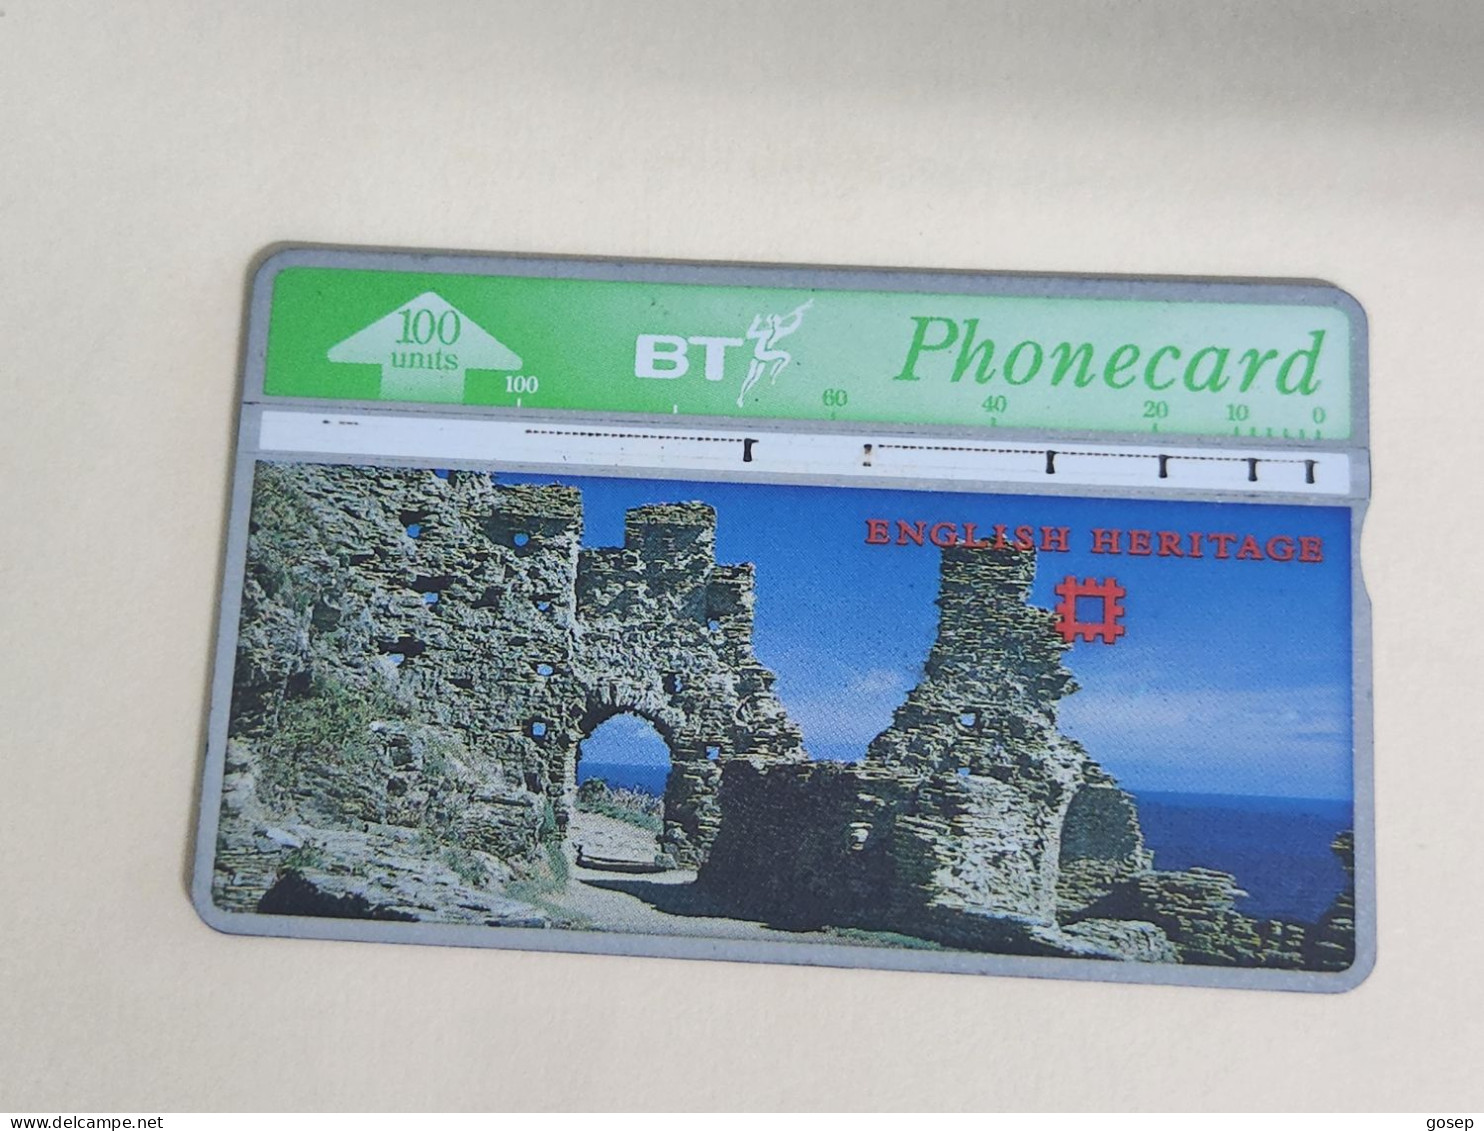 United Kingdom-(BTA121)-HERITAGE-Tintalgel Castle-(209)(100units)(527H03606)price Cataloge3.00£-used+1card Prepiad Free - BT Advertising Issues